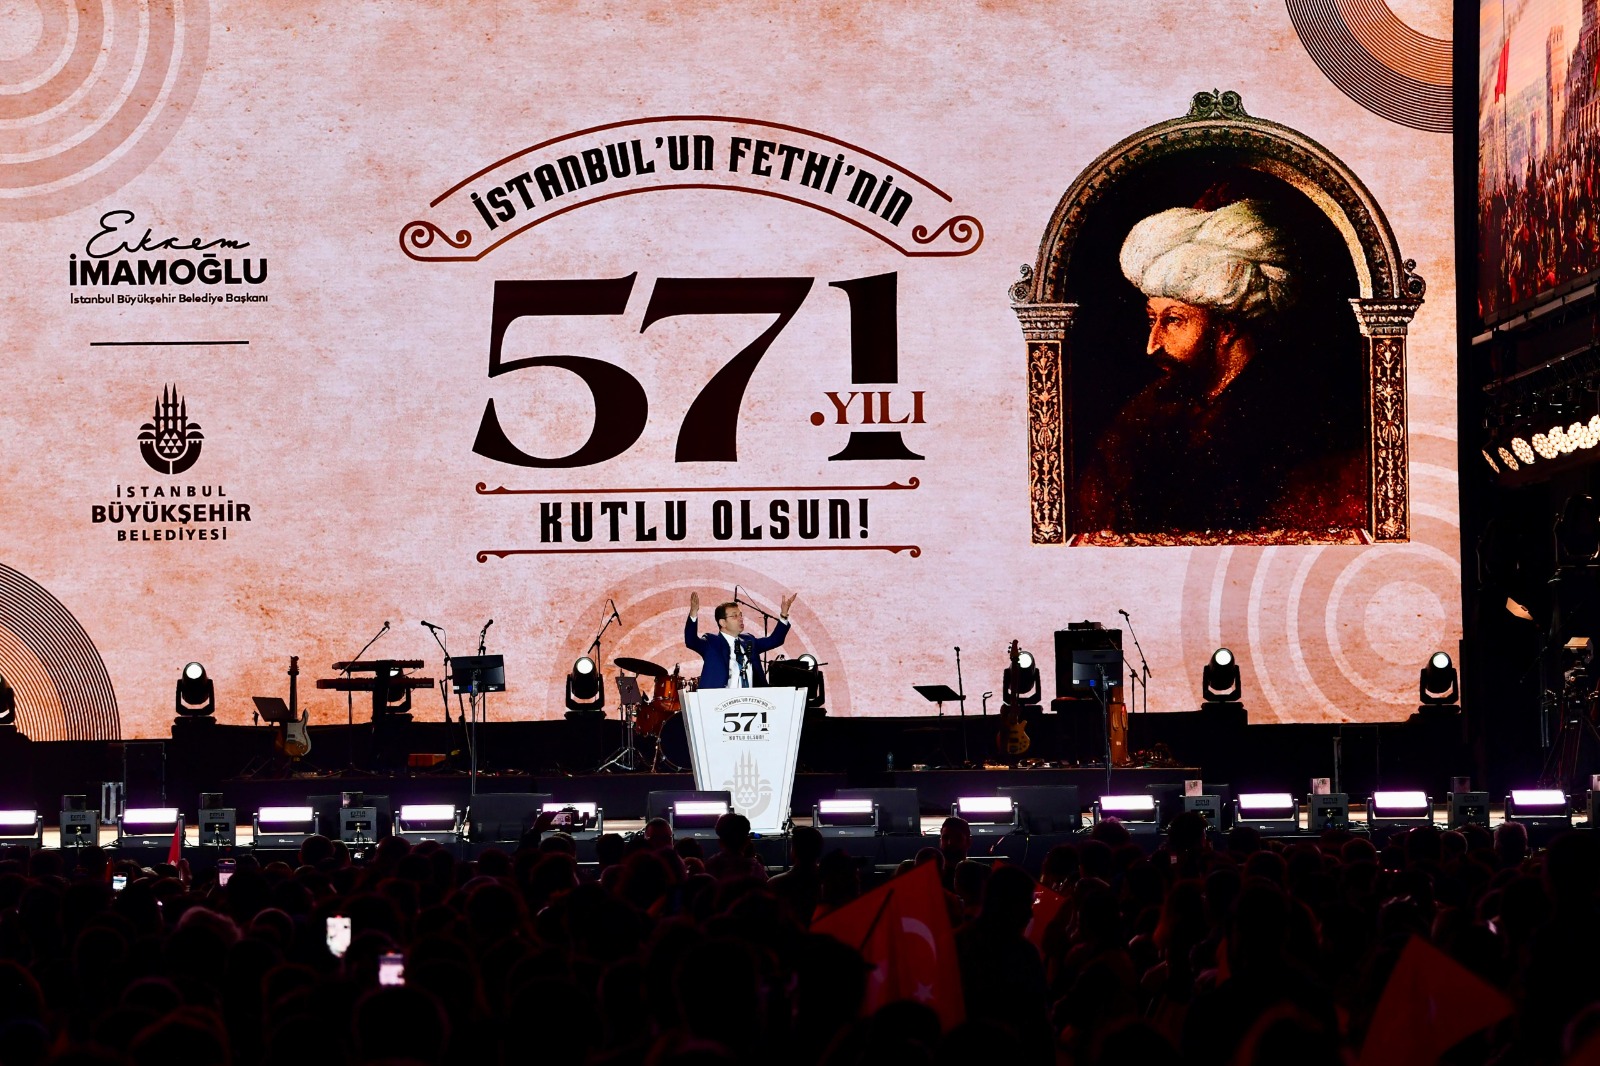 İmamoğlu: İstanbul’a sahip çıkmak Fatih’in ve Atatürk’ün değerlerine sahip çıkmaktır